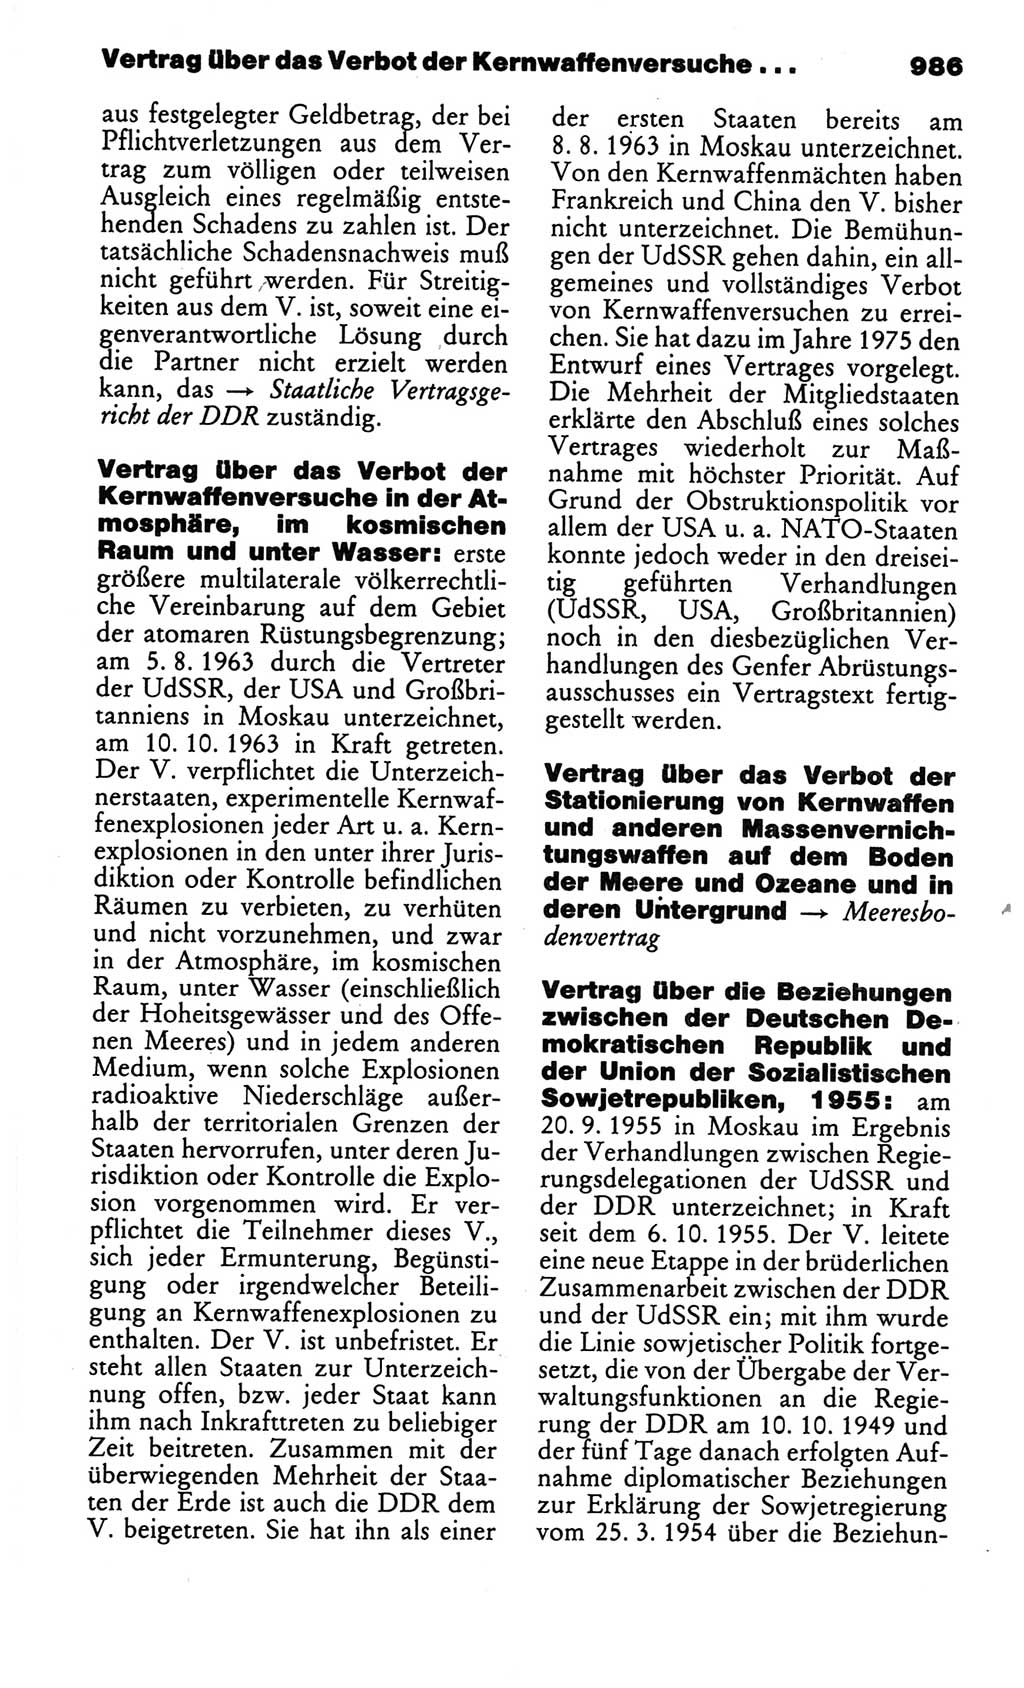 Kleines politisches Wörterbuch [Deutsche Demokratische Republik (DDR)] 1986, Seite 986 (Kl. pol. Wb. DDR 1986, S. 986)